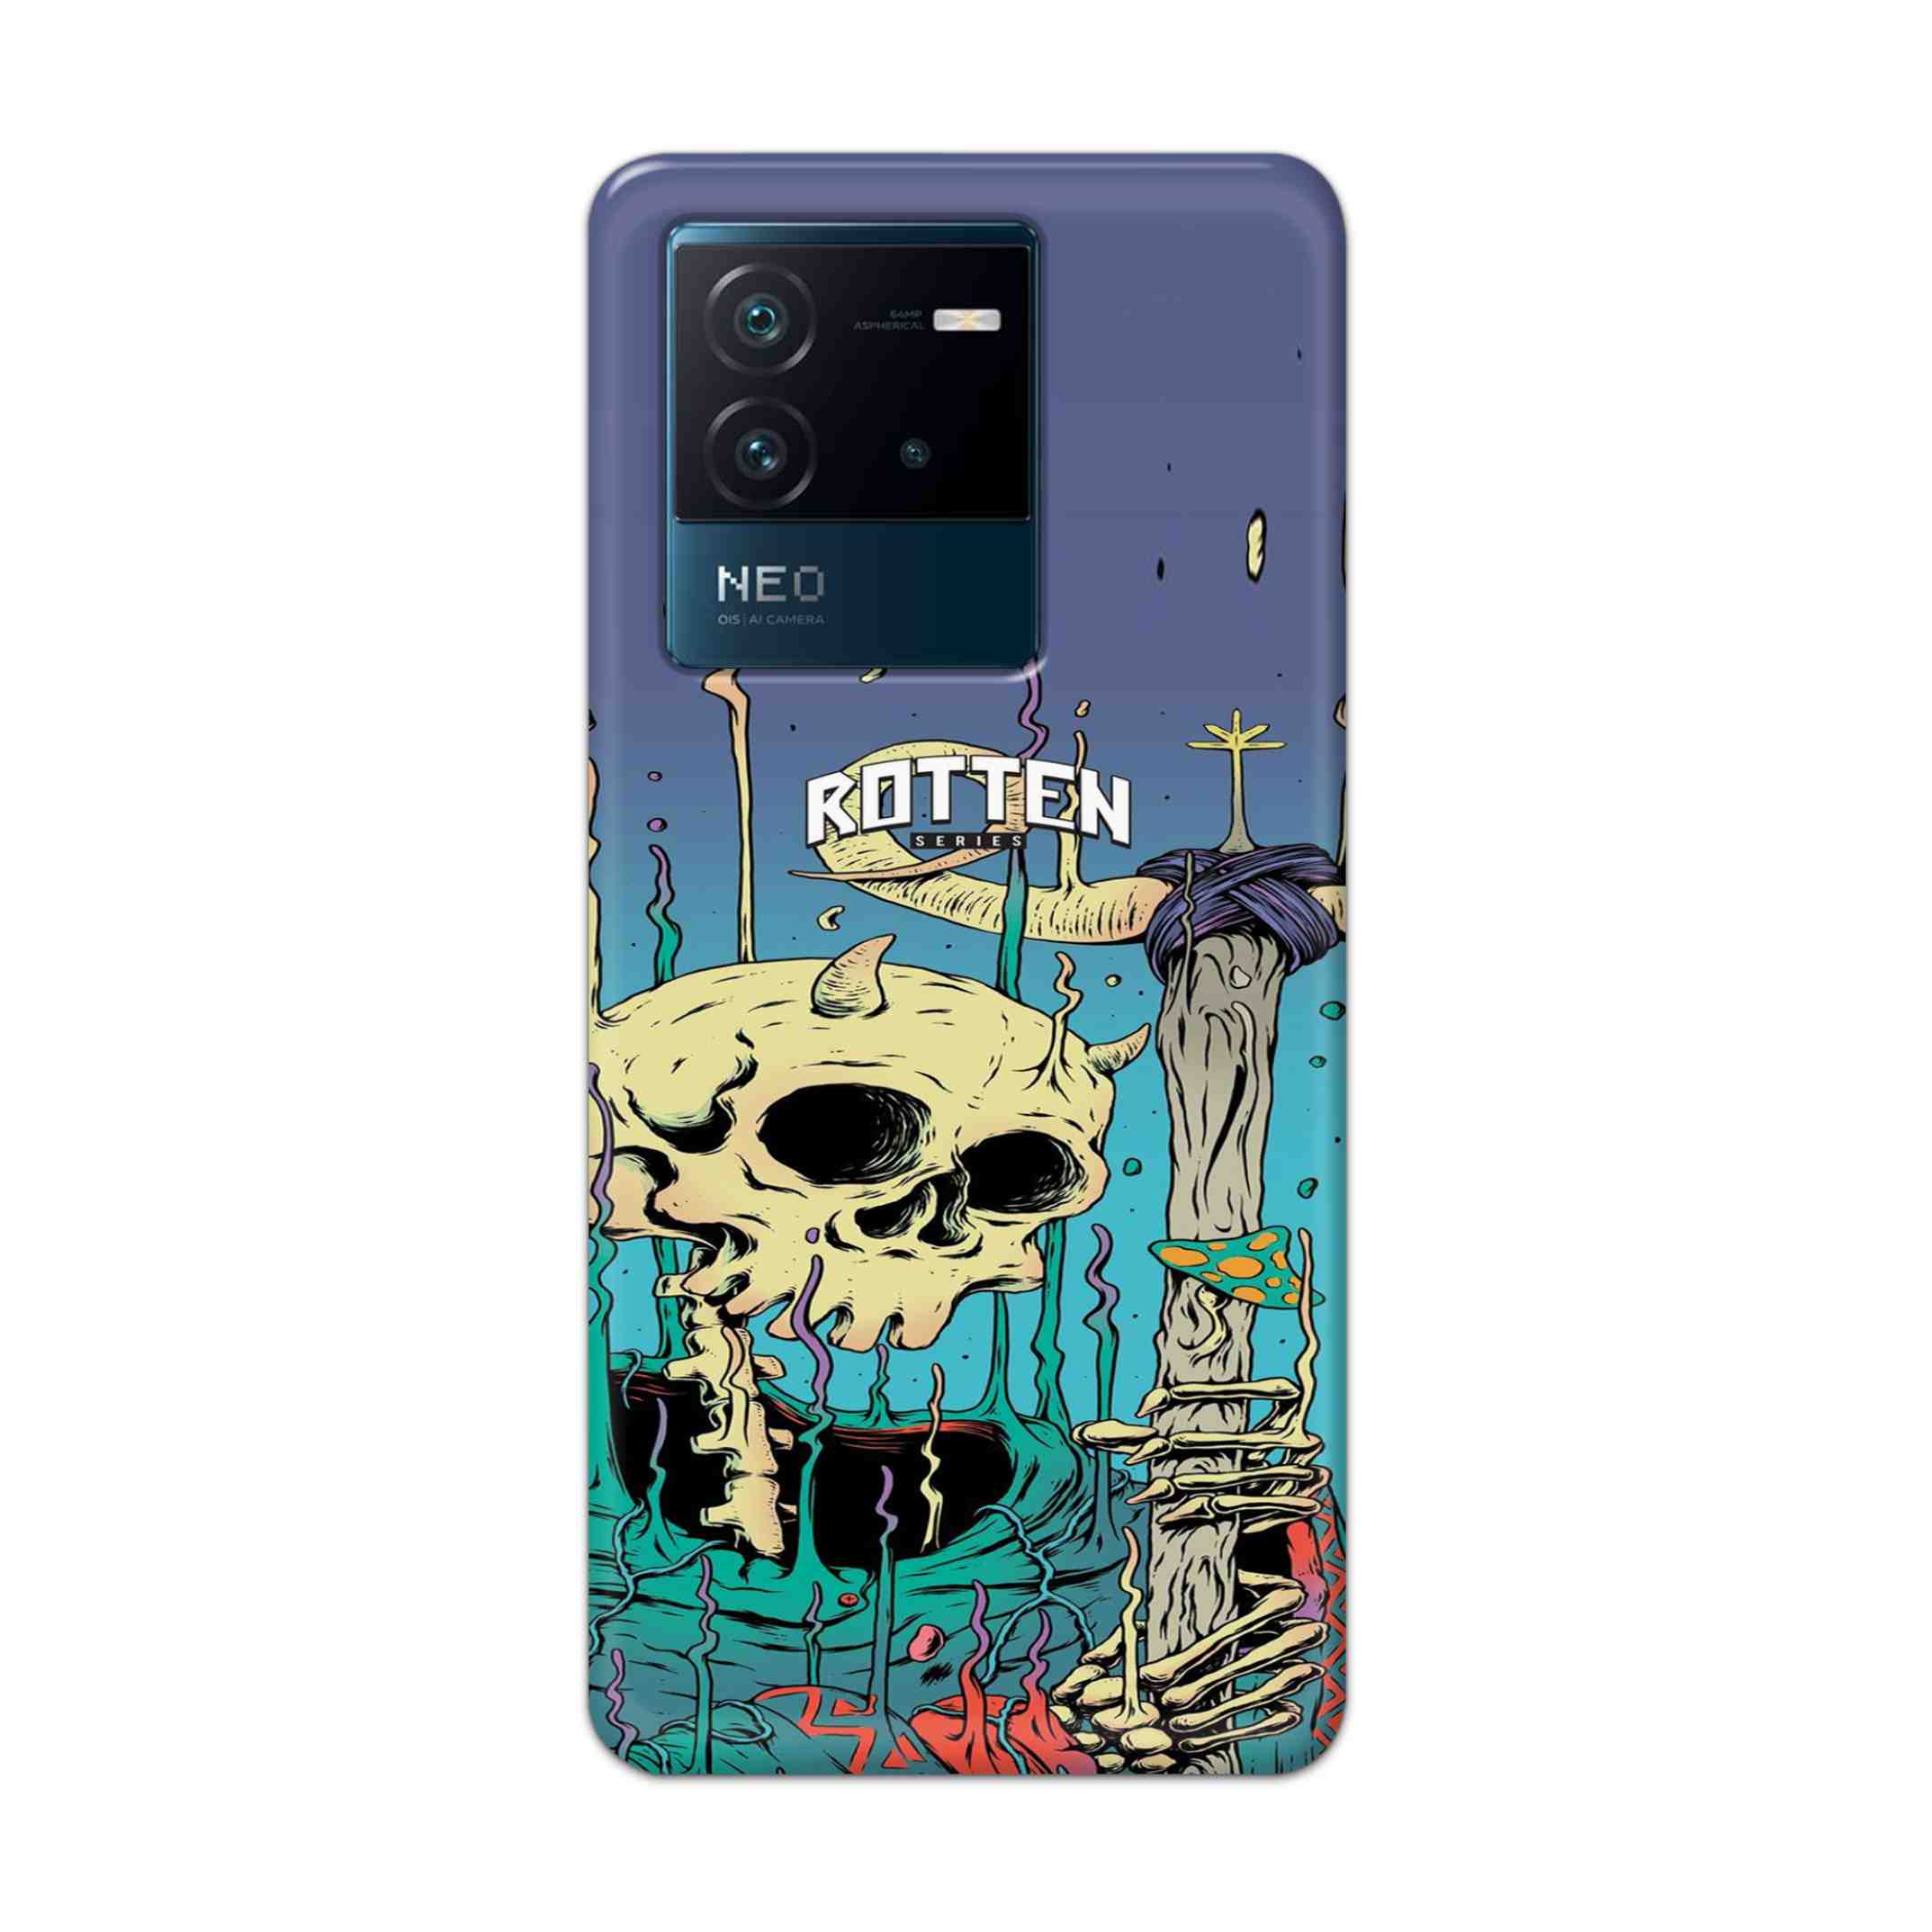 Buy Skull Hard Back Mobile Phone Case Cover For iQOO Neo 6 5G Online